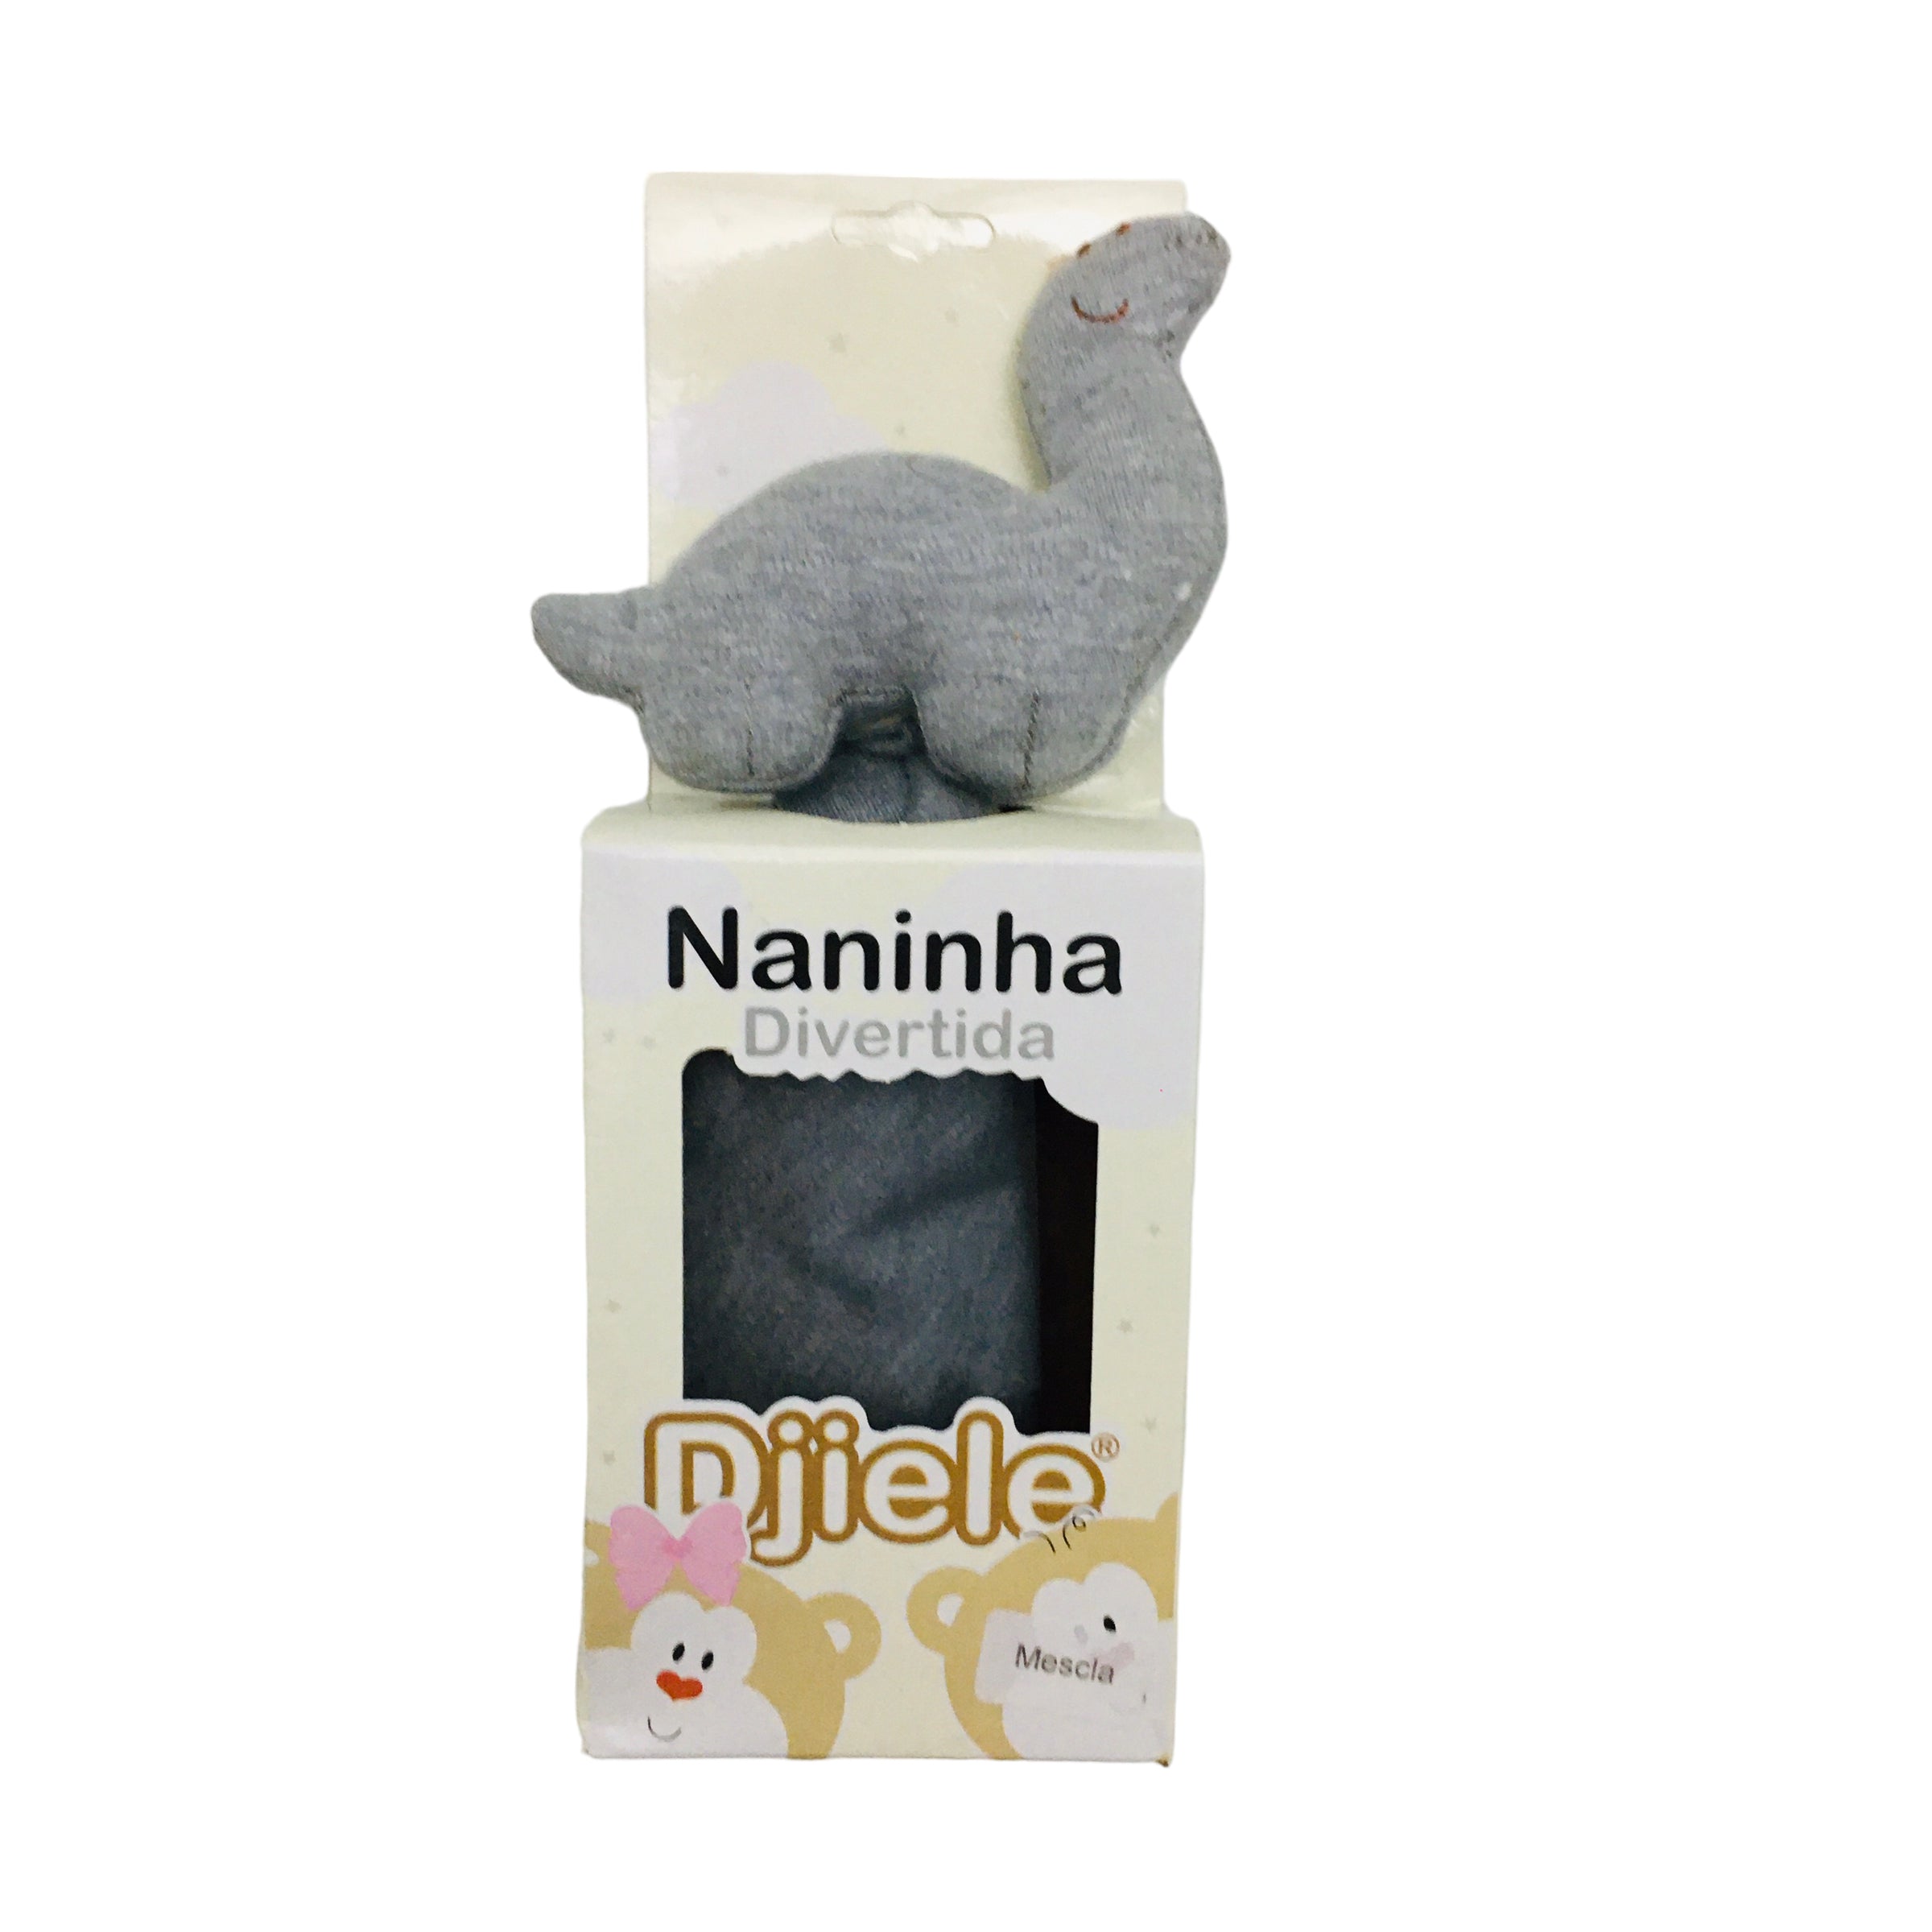 Naninha Djiele Dino